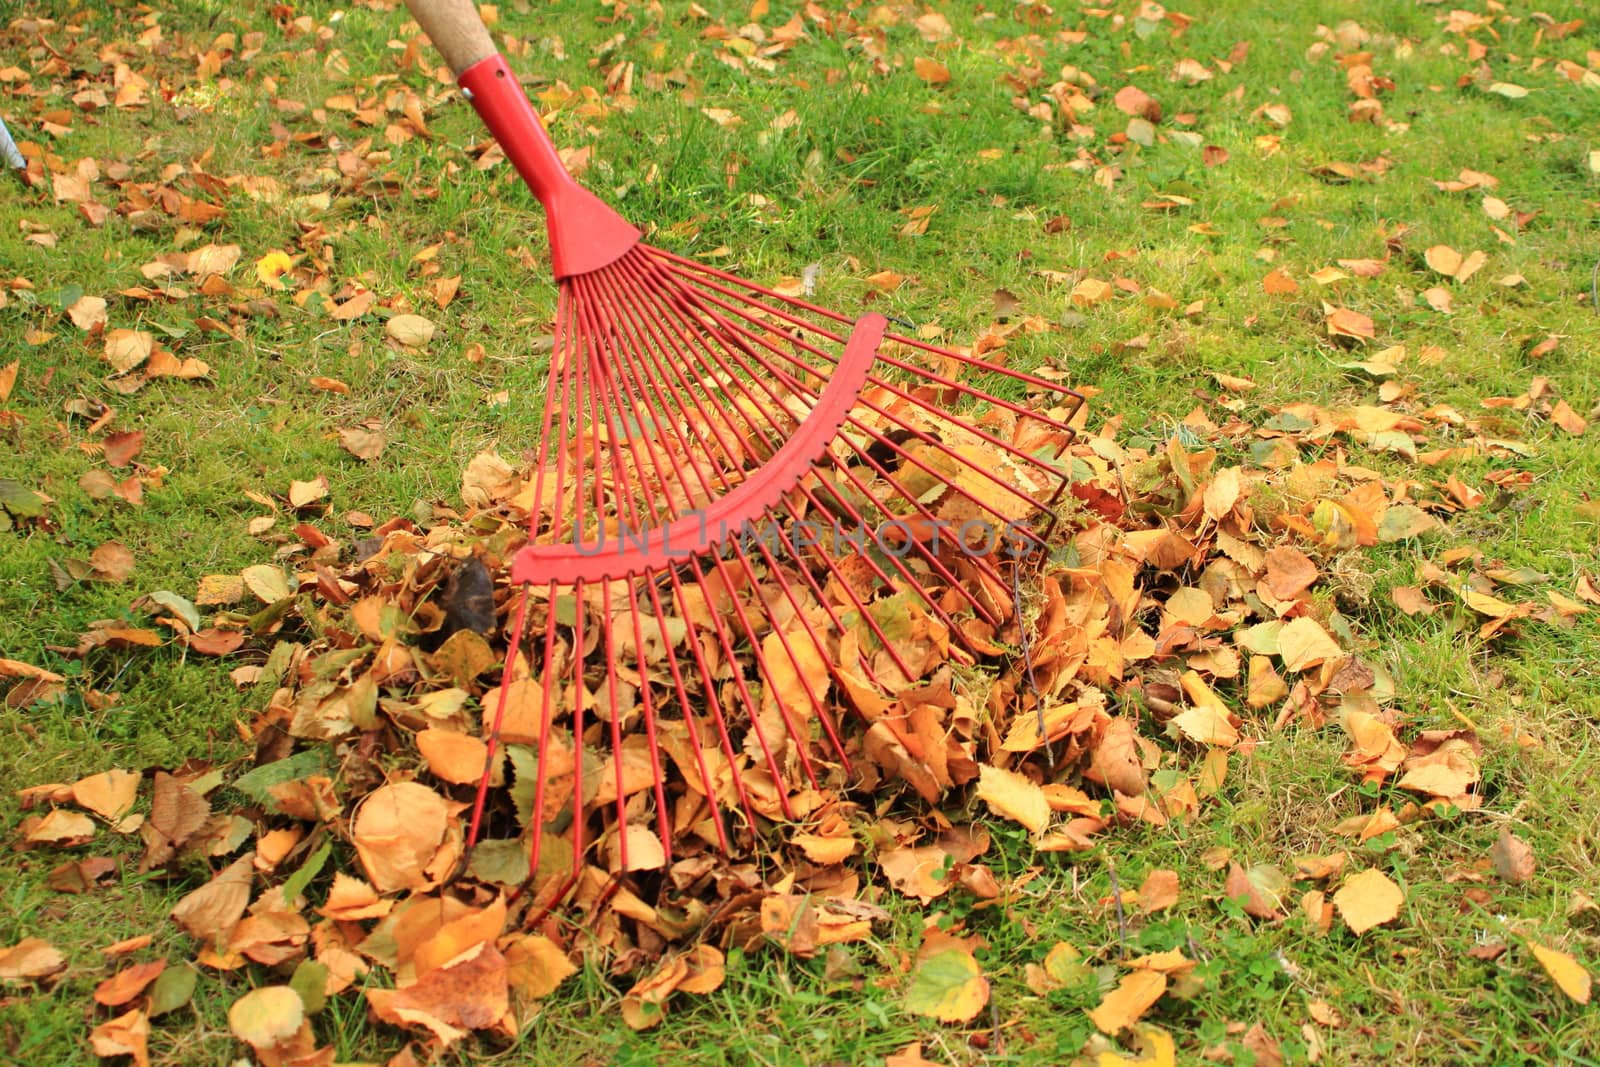 Raking leaves from the autumn garden